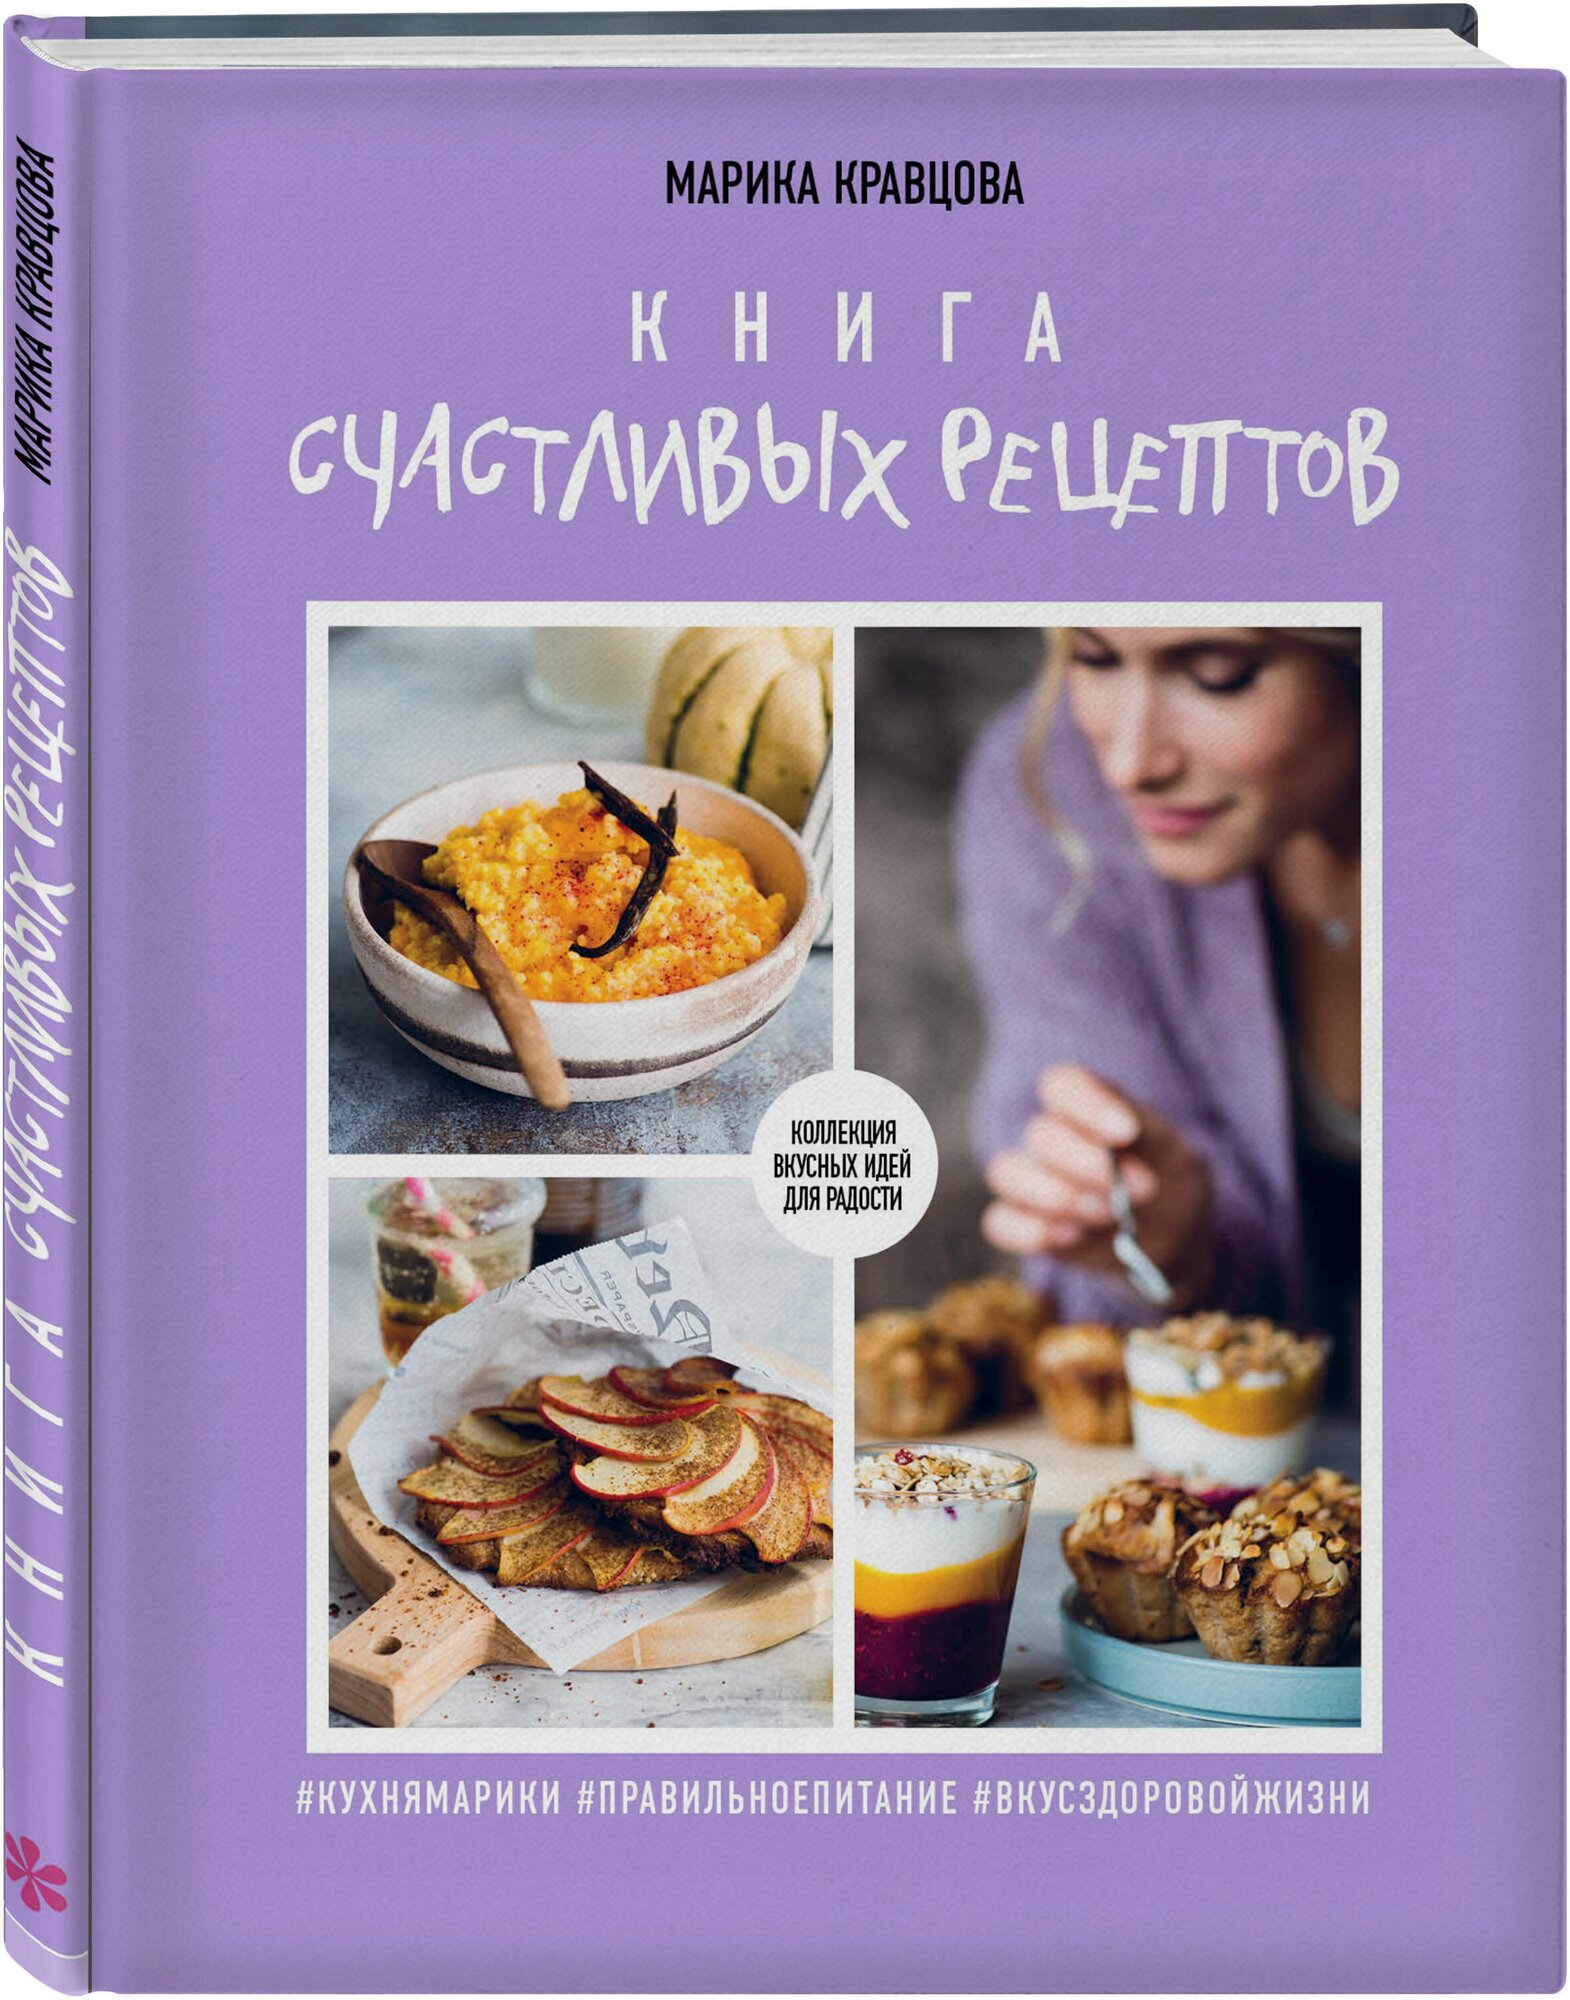 Марика Кравцова. Книга счастливых рецептов